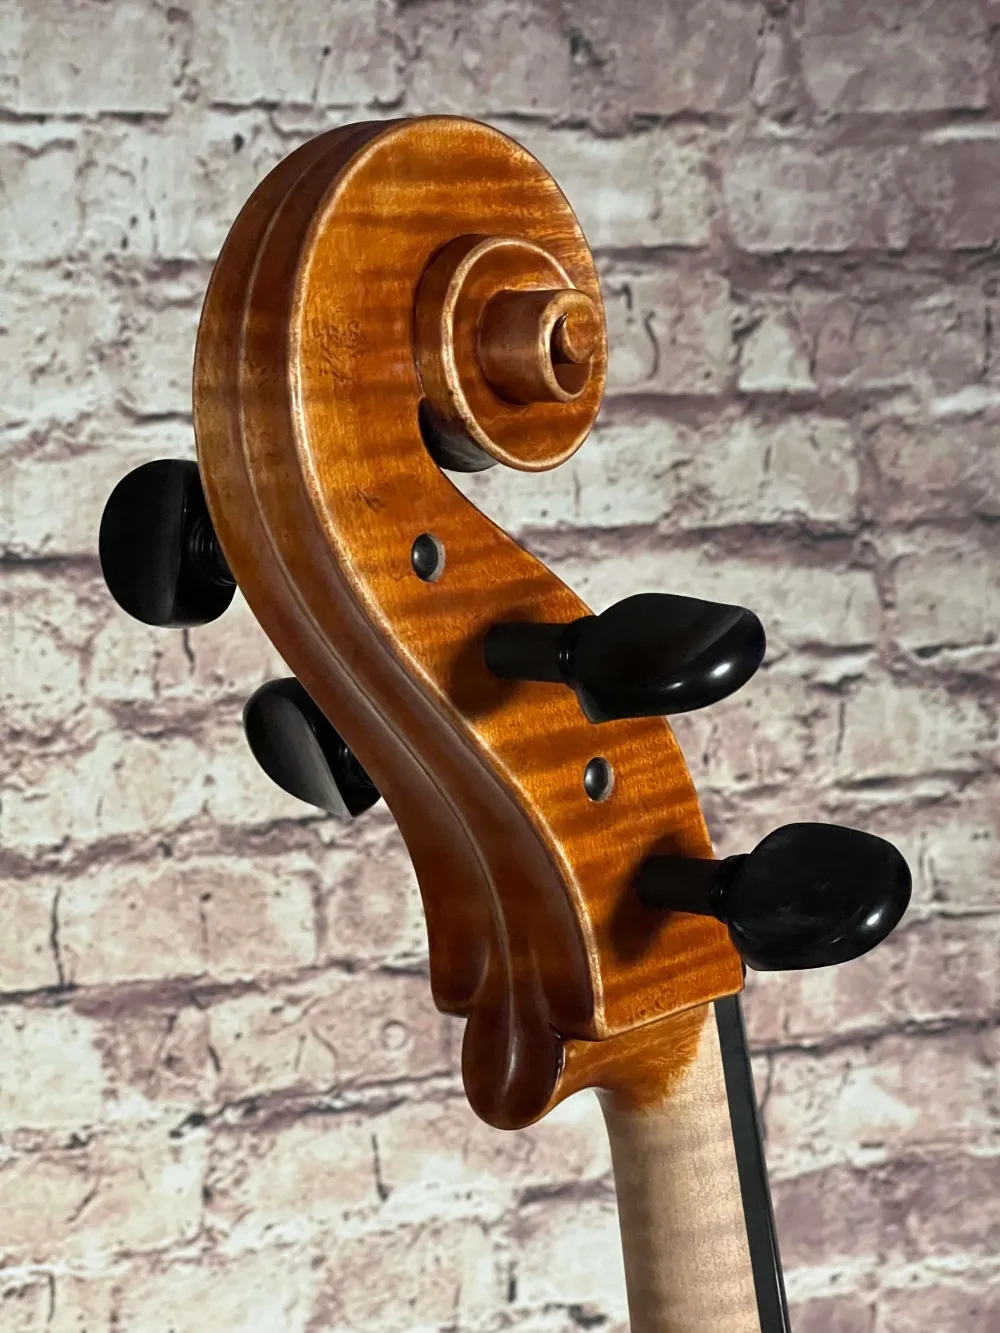 Schnecke-hinten-Seite-Detailansicht eines Stoica Alin di Bottega Cello Handarbeit aus Siebenbürgen 2022